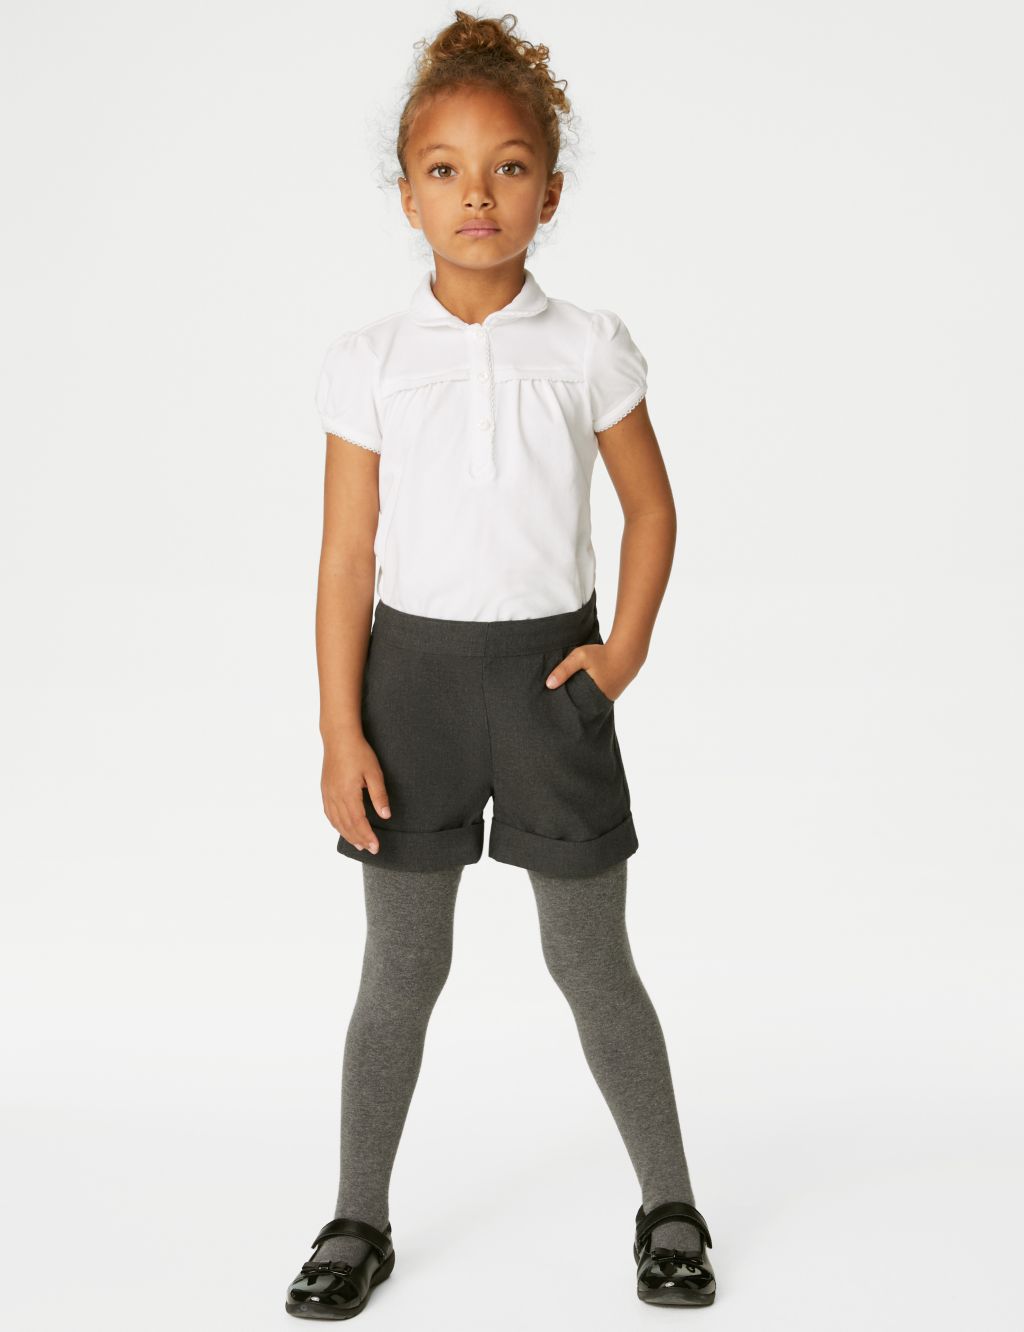 Microfibre School Shorts - Grey